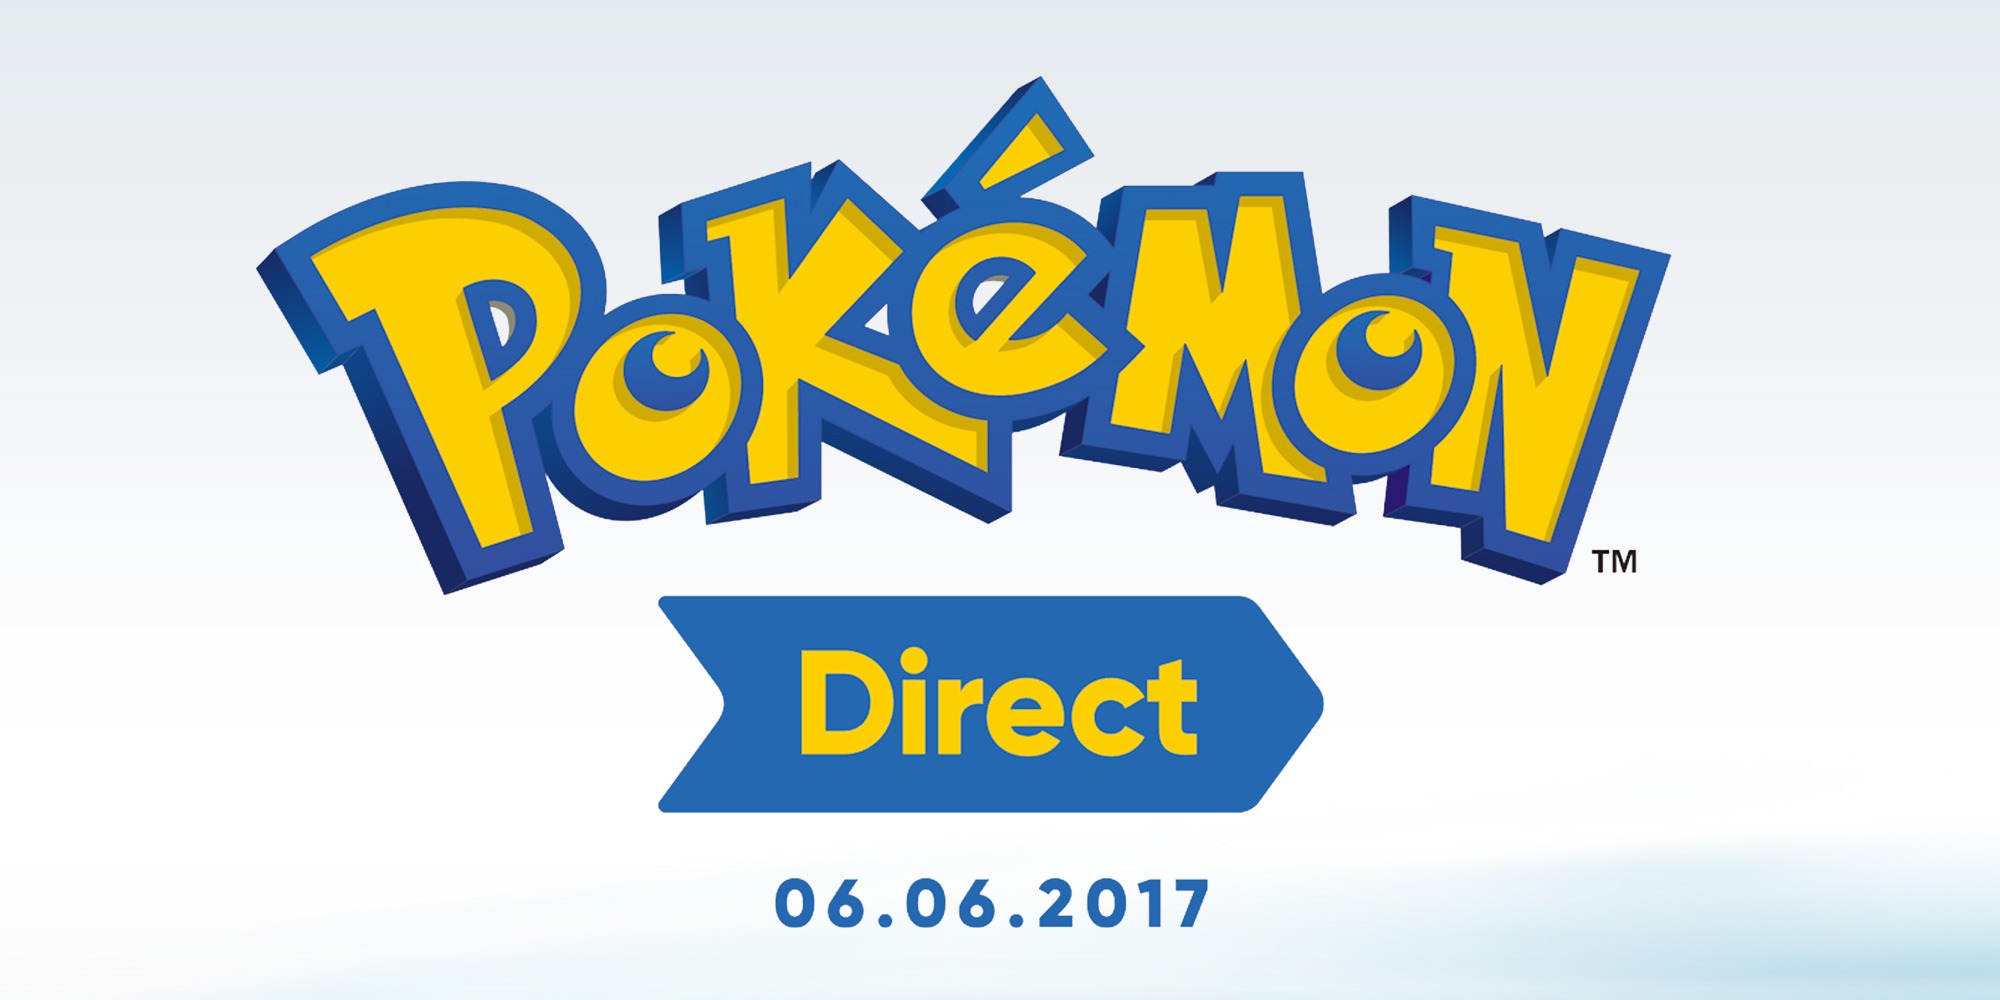 Annunciato un Pokémon Direct per il 6 giugno alle 16.00: nuovo gioco Pokémon in arrivo?